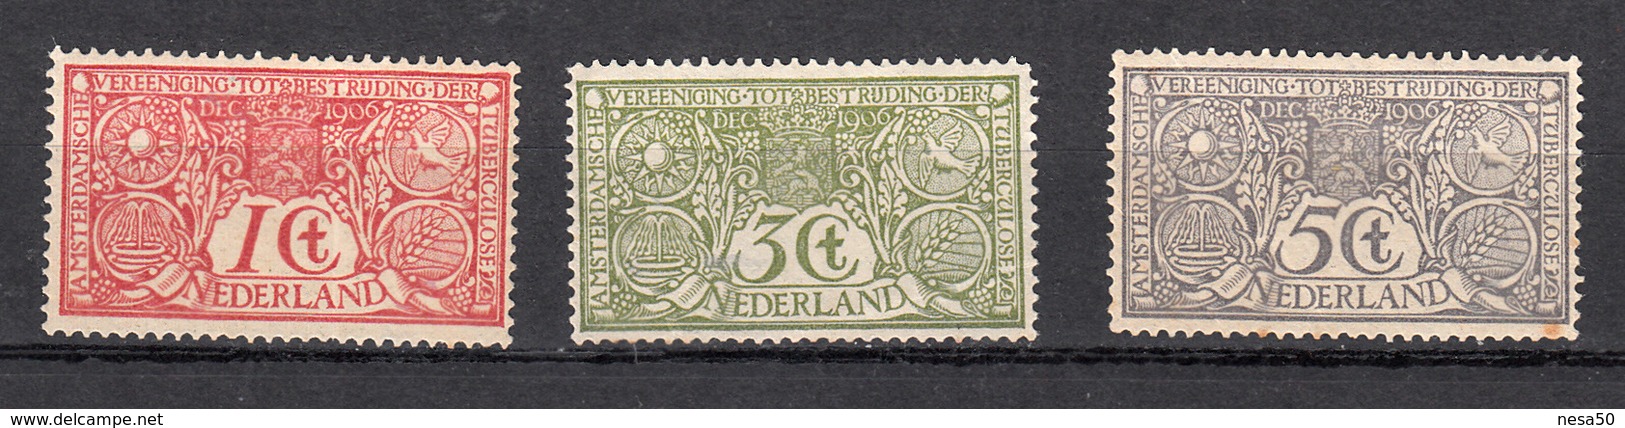 Nederland 1906 Nvph Nr 84 - 86, Mi Nr 69 - 71, Tuberculose Zegels, Niet Geheel Postfris, Derde Zegel Achterkant Vlekje - Ungebraucht